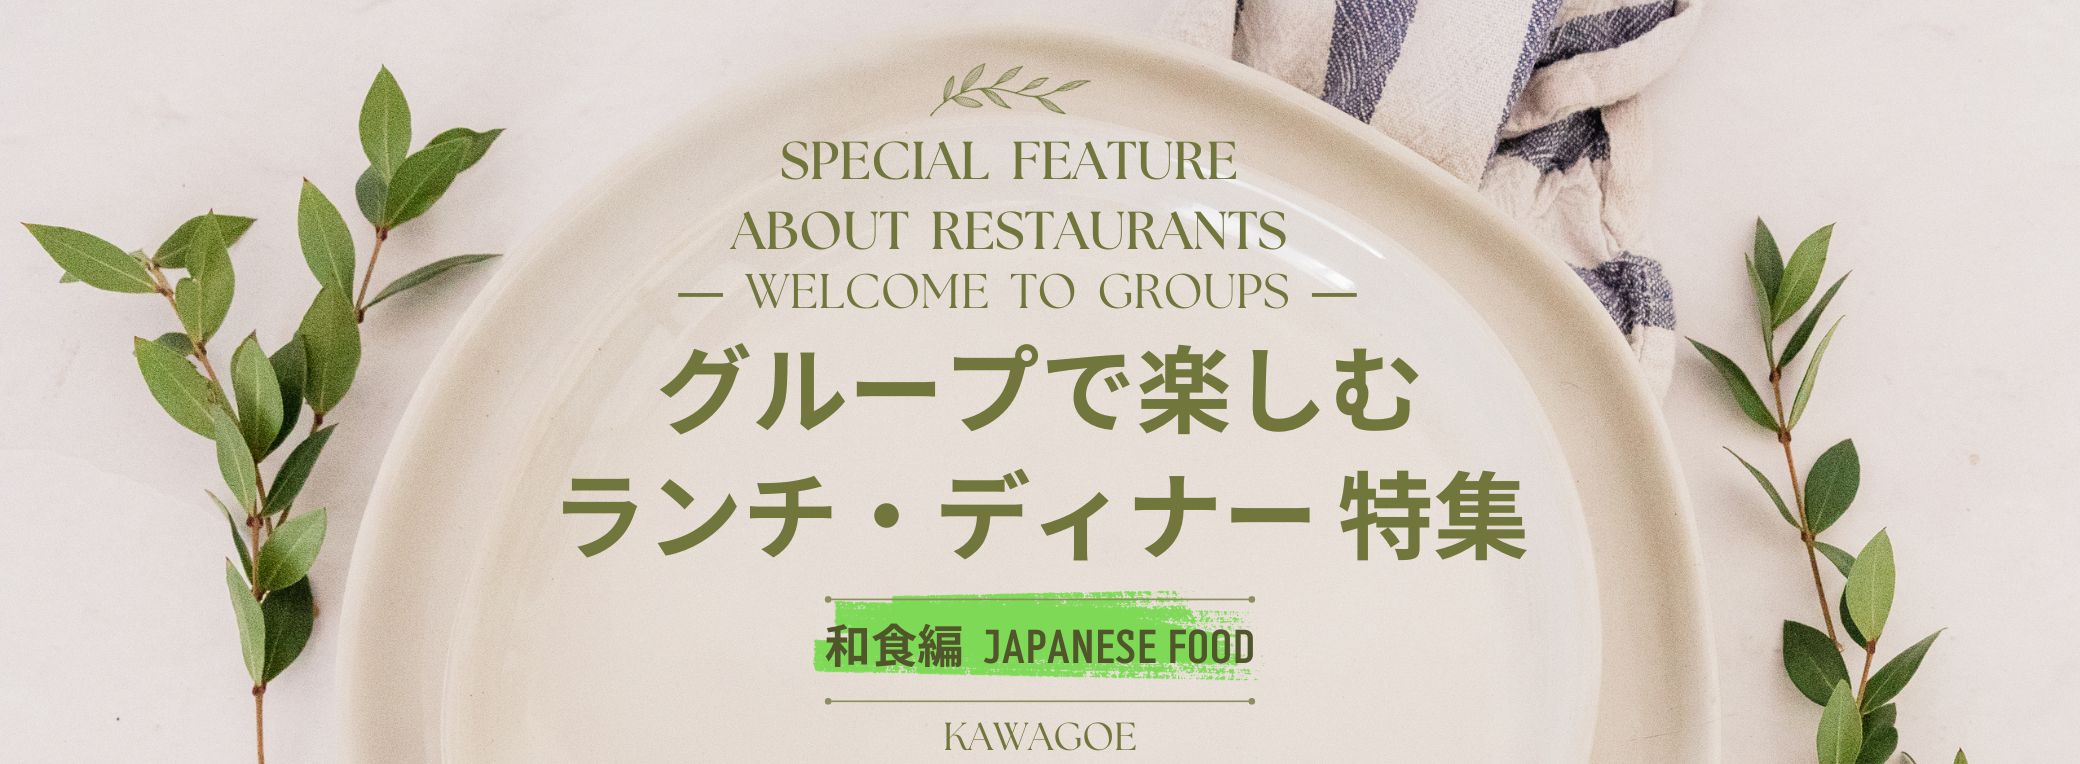 🍴 Especial almuerzo y cena para grupos - Edición comida japonesa - 🎉